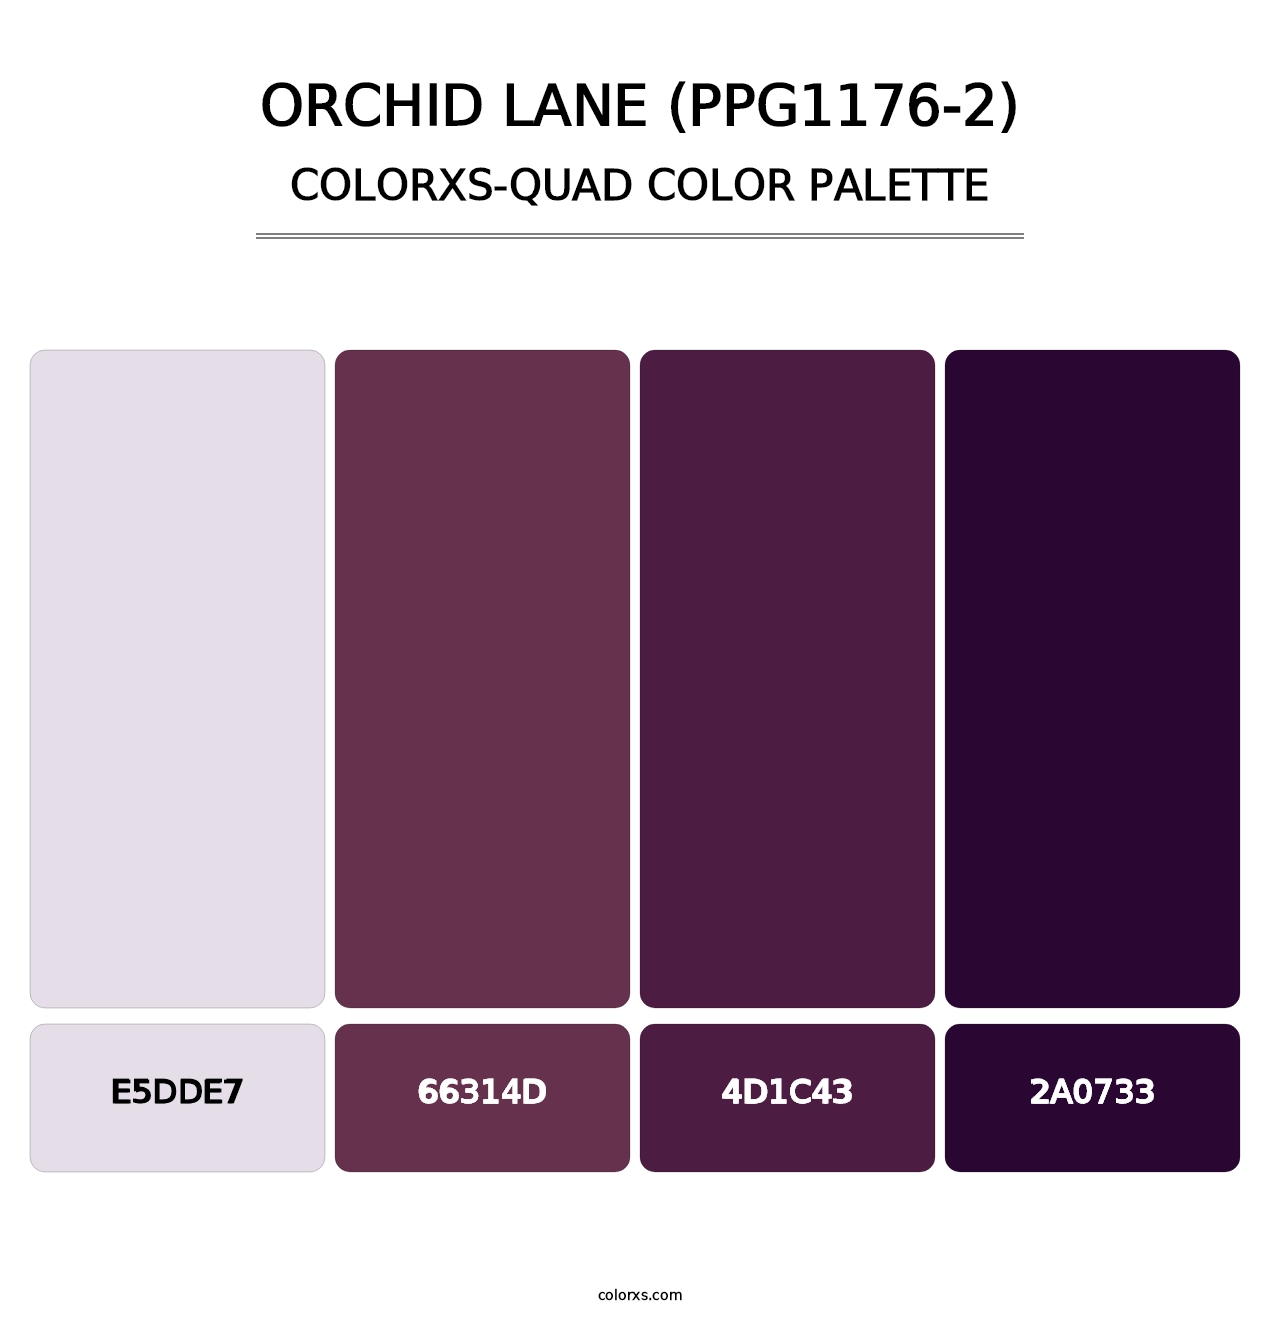 Orchid Lane (PPG1176-2) - Colorxs Quad Palette